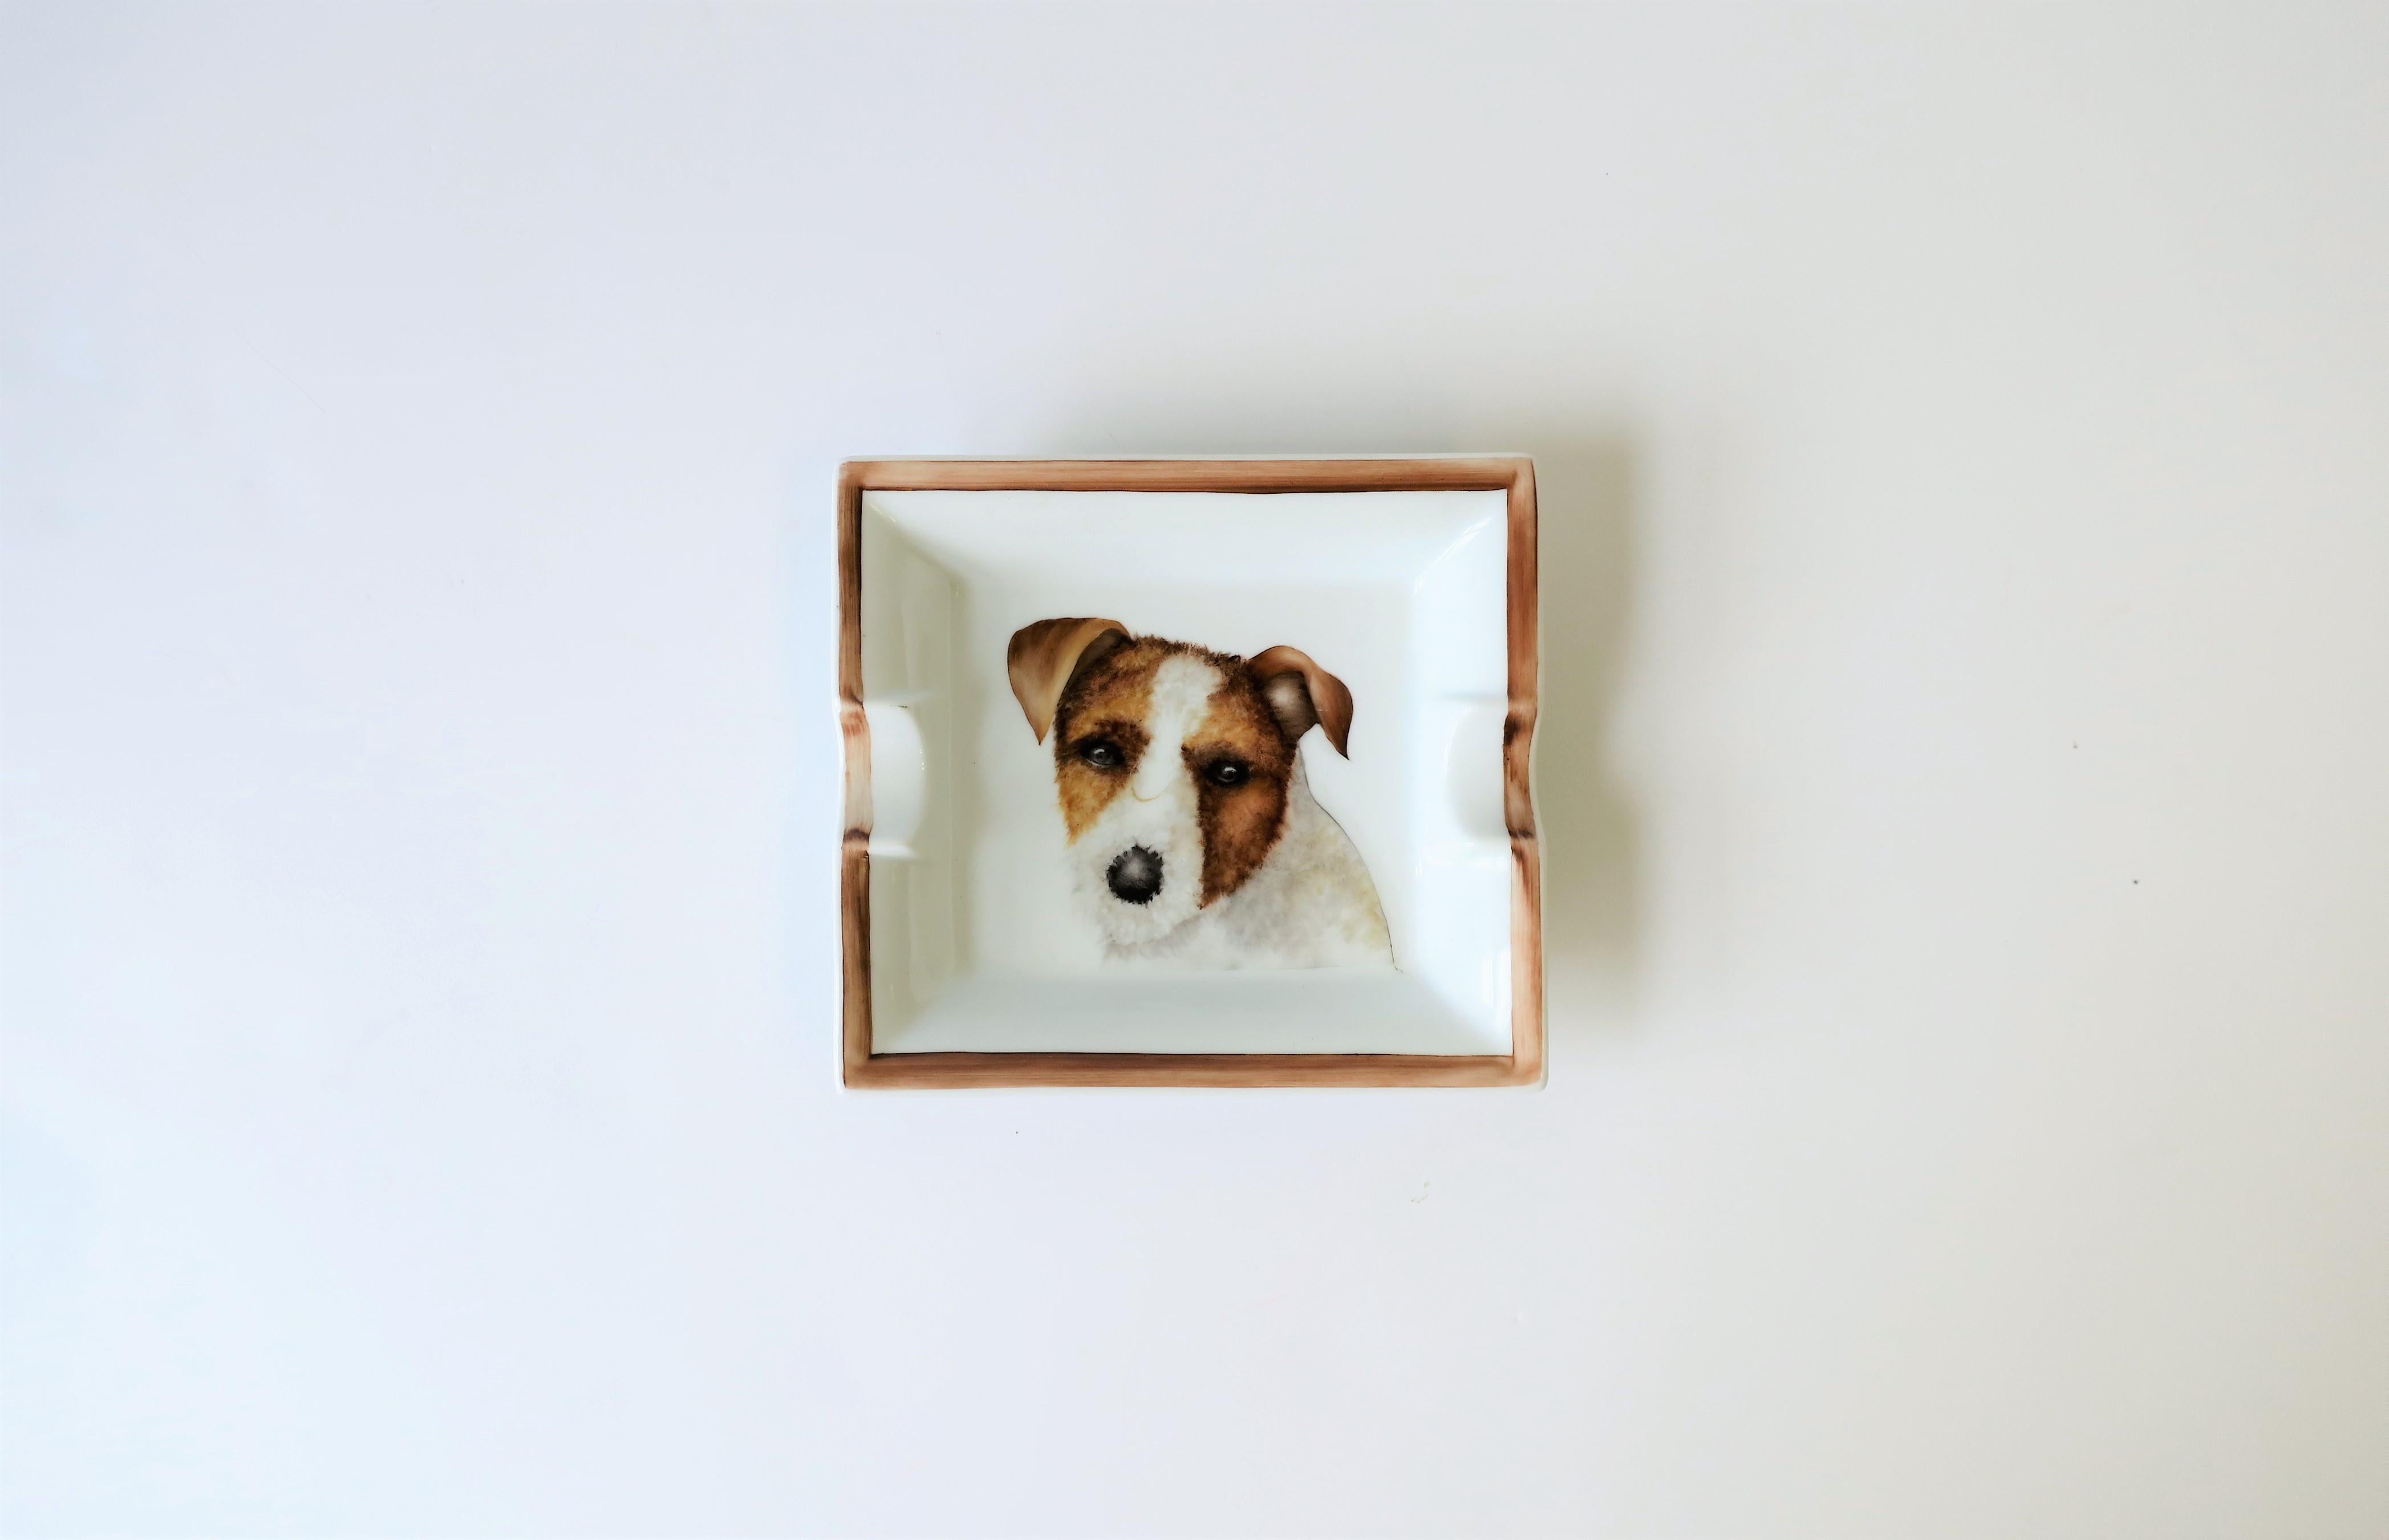 Ein großer Jack Russell Terrier Hund handbemalt Porträt Porzellan Tablett vide-poche (catch-all) oder Zigarre Aschenbecher:: ca. frühen 21. Jahrhundert:: Spanien. Ein schönes Porträt des kultigen Jack Russell Terriers. Gezeichnet 